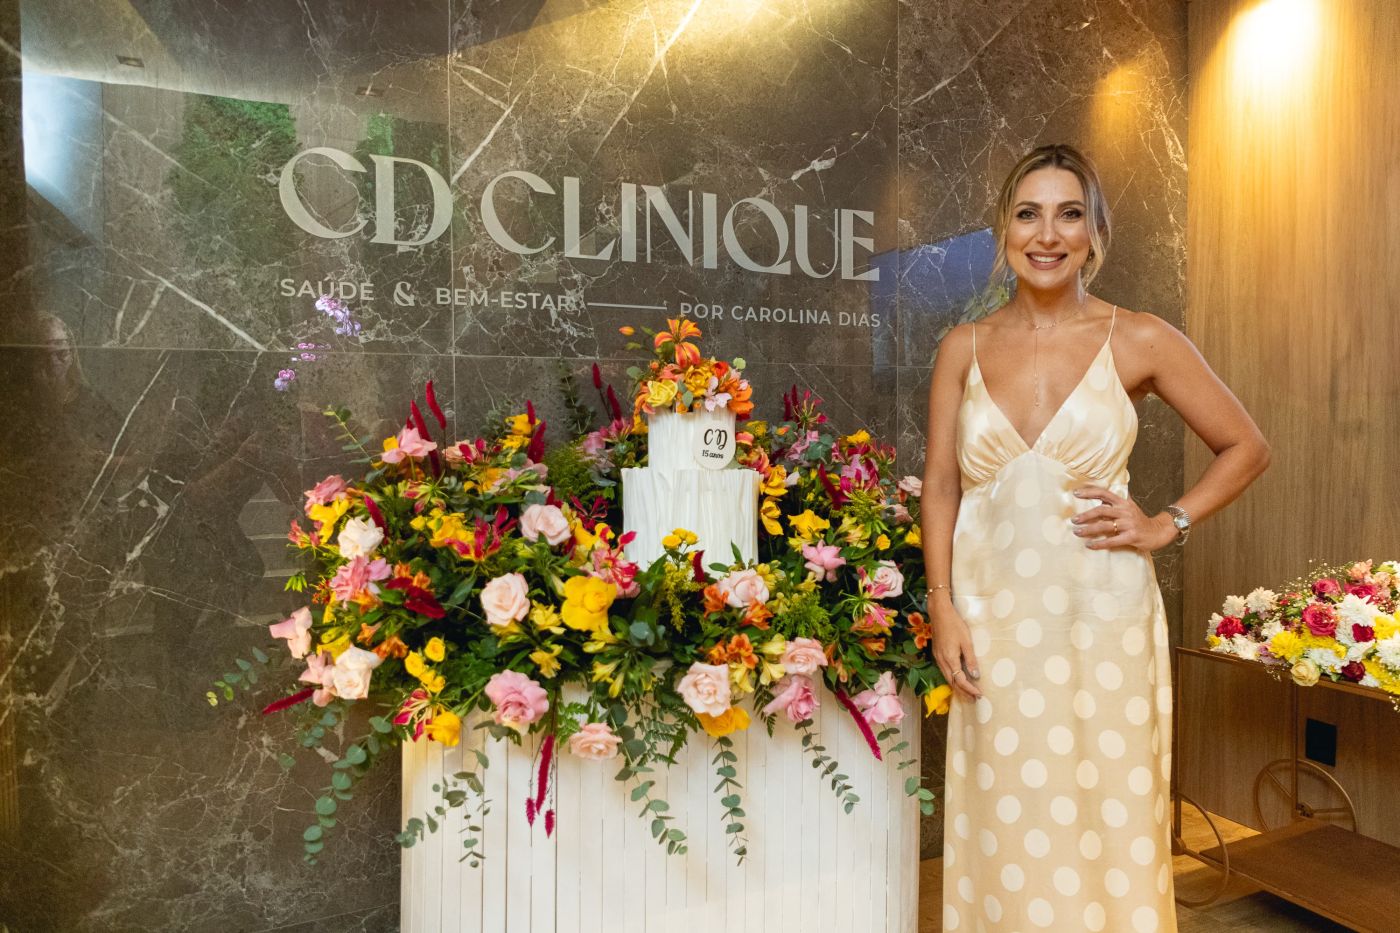 Carolina Dias celebra 15 anos de clínica com retrofit da marca e lançamento de serviços em Salvador. Veja fotos